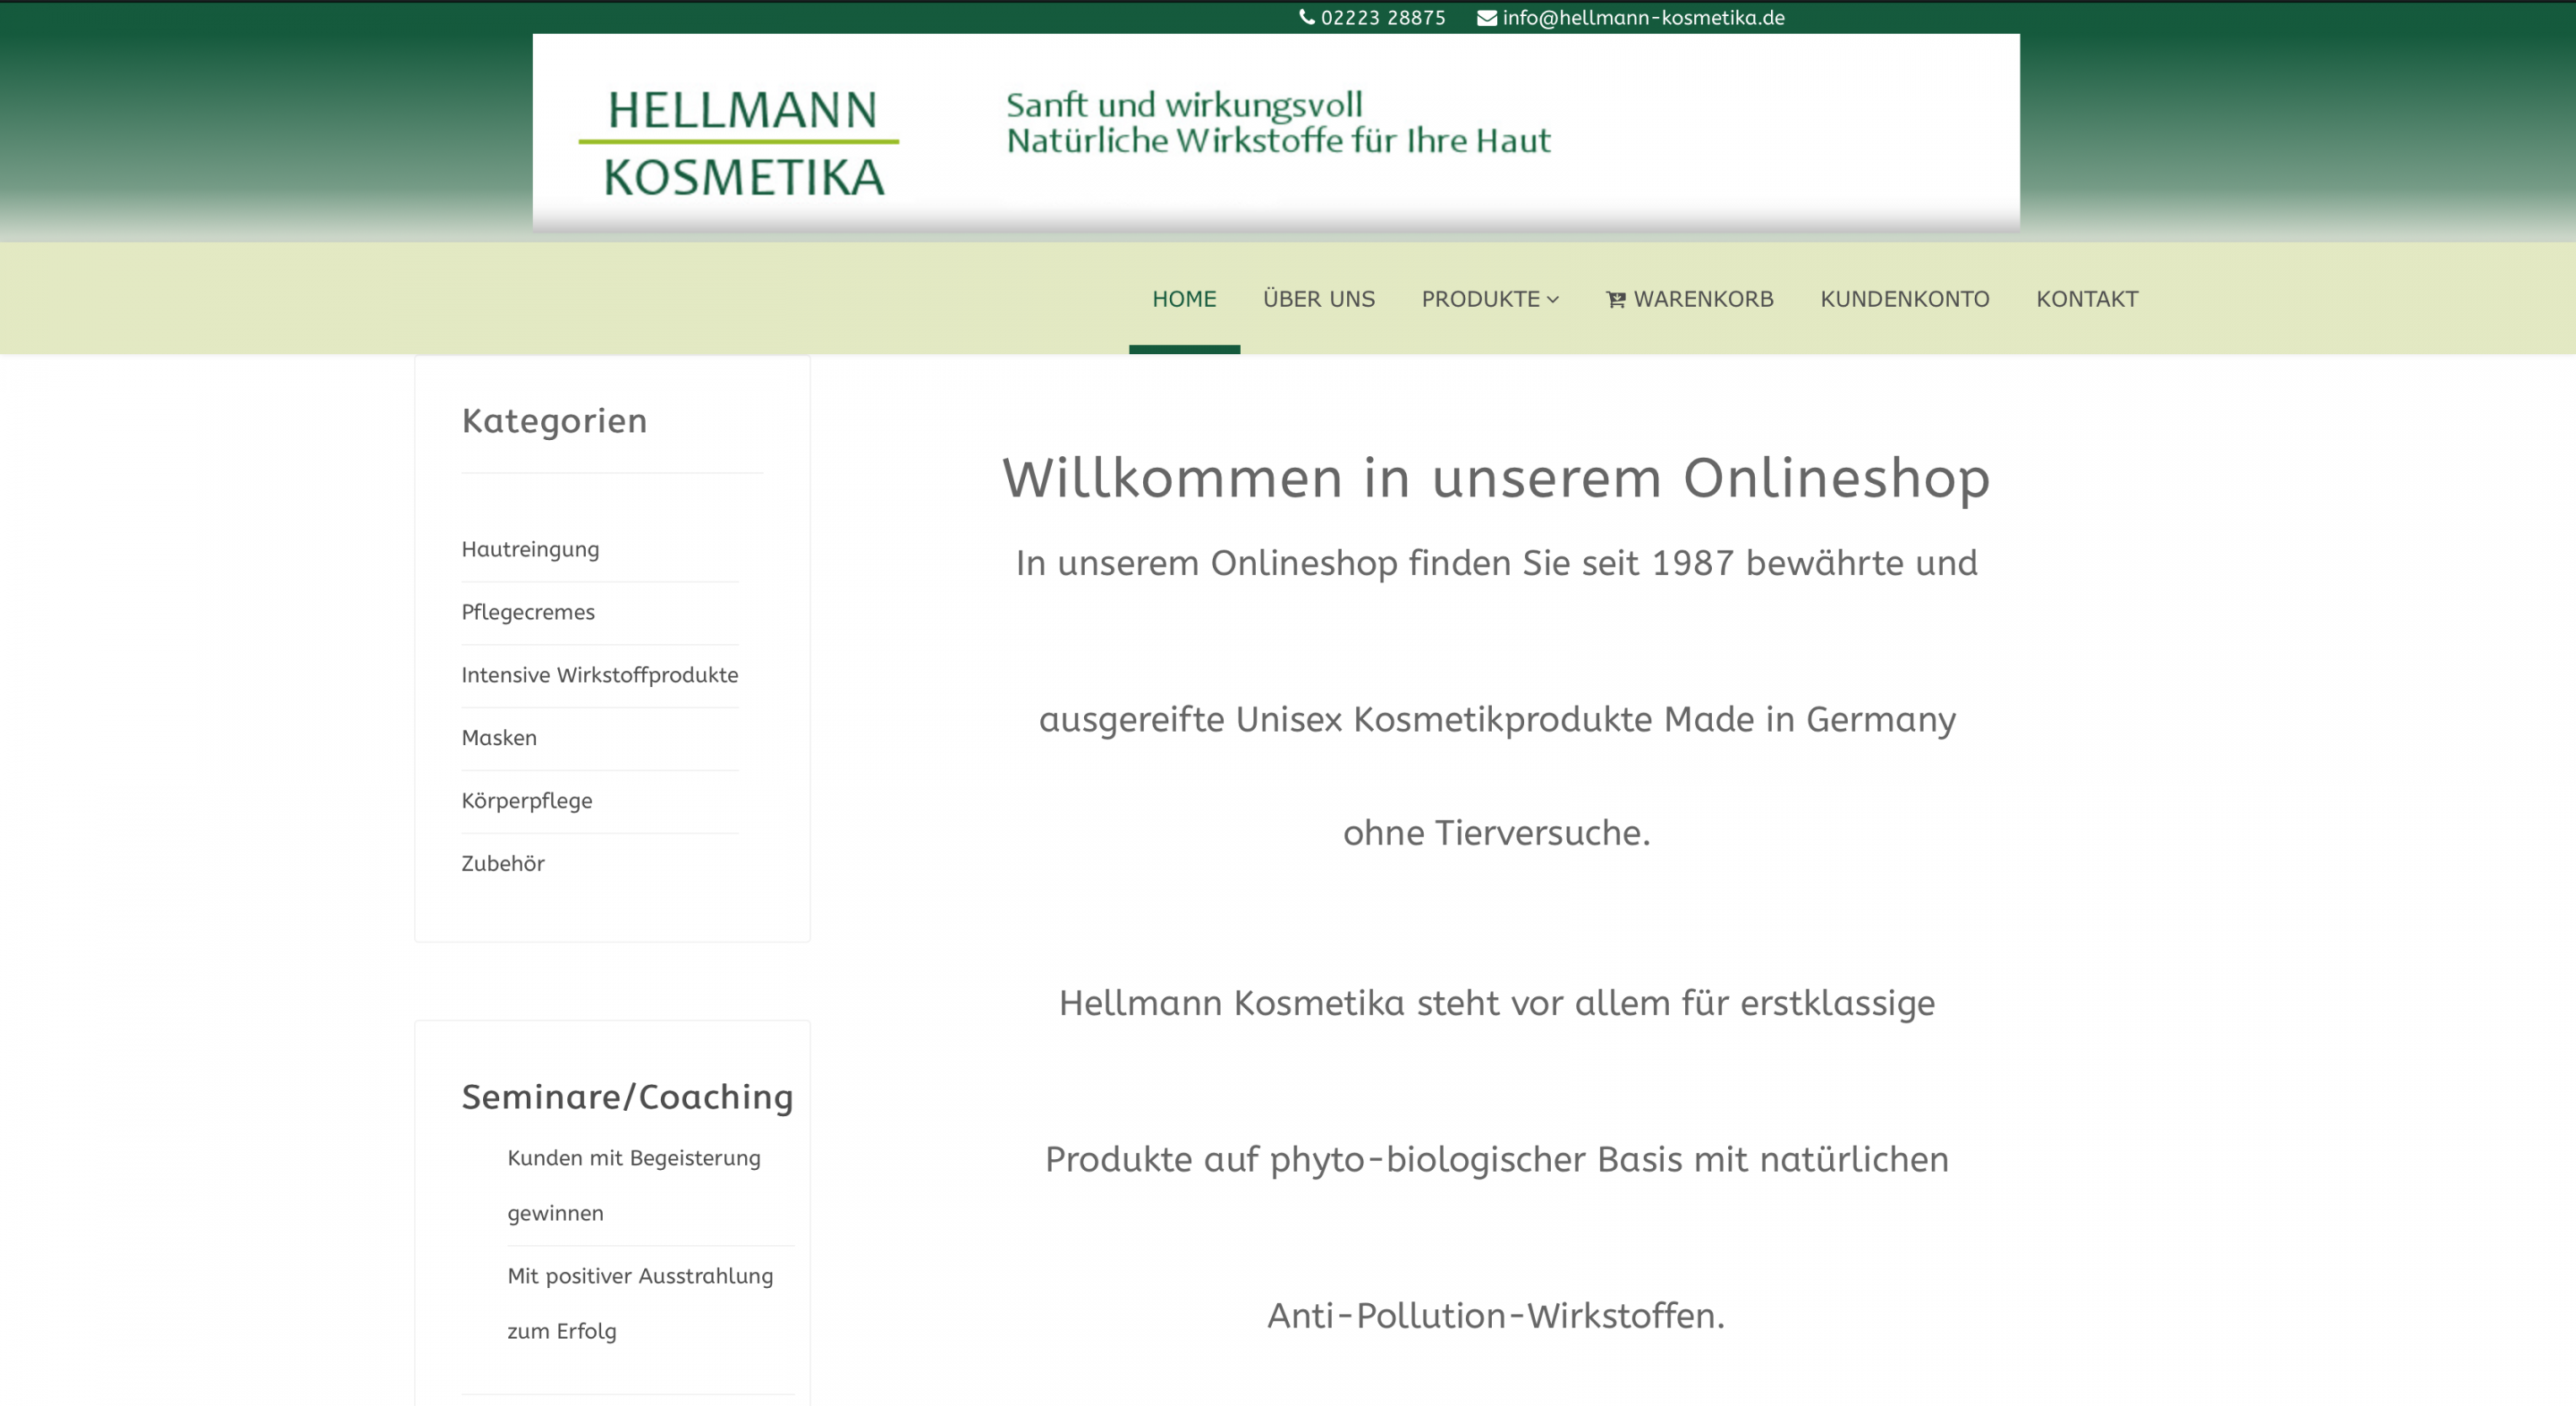 Hellmann Kosmetika